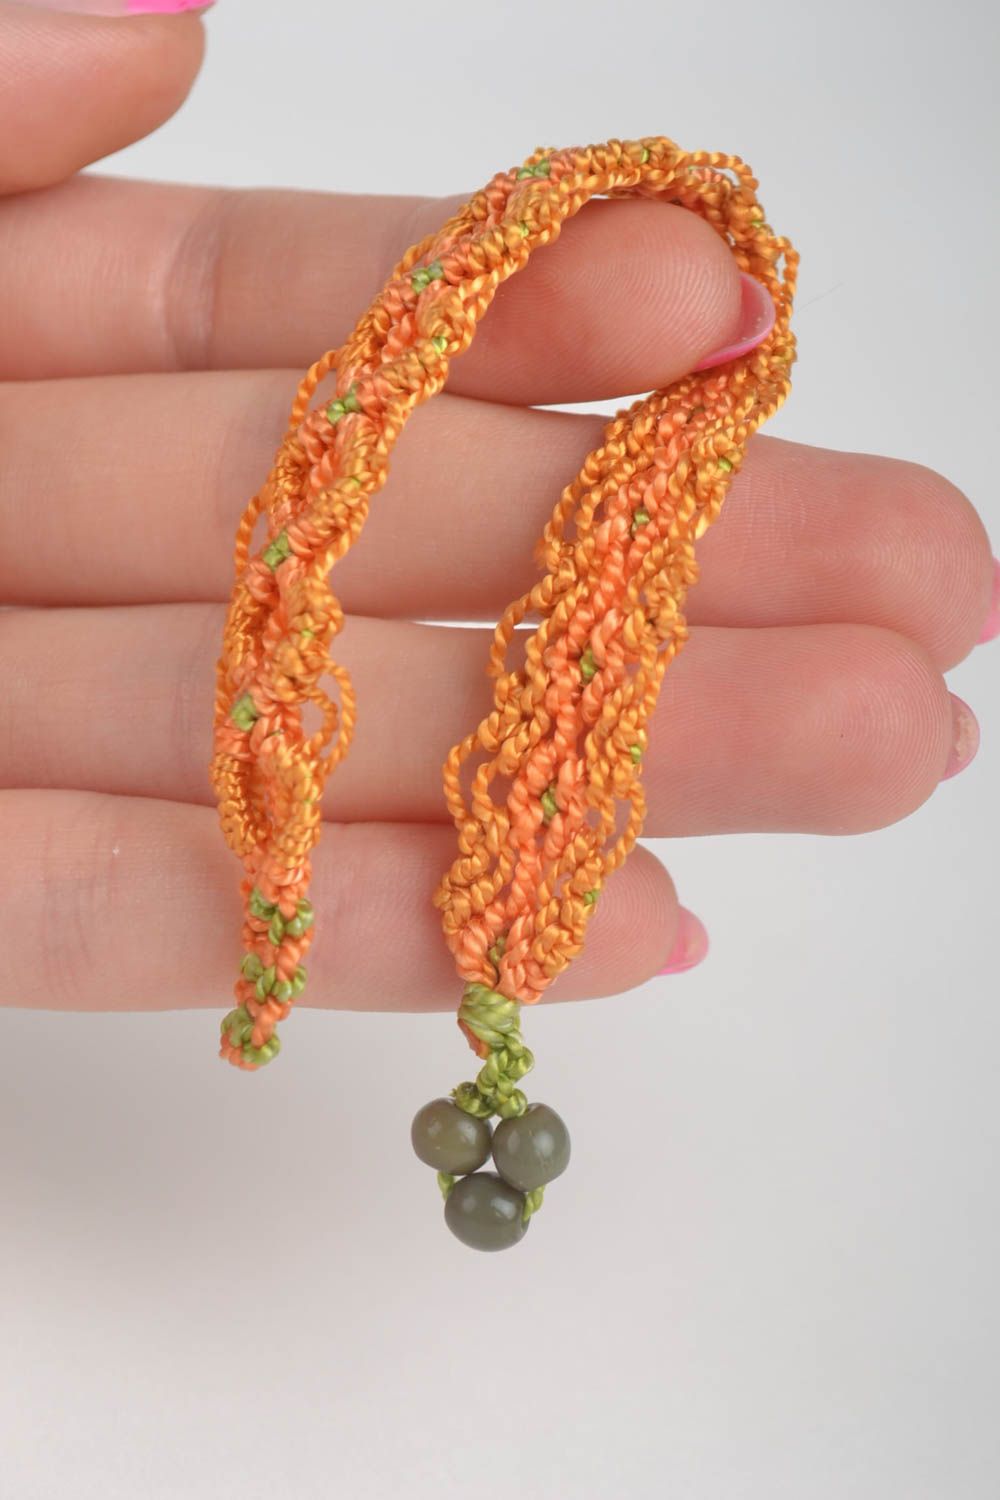 Женский браслет ручной работы браслет на руку плетеный браслет оранжевый фото 5